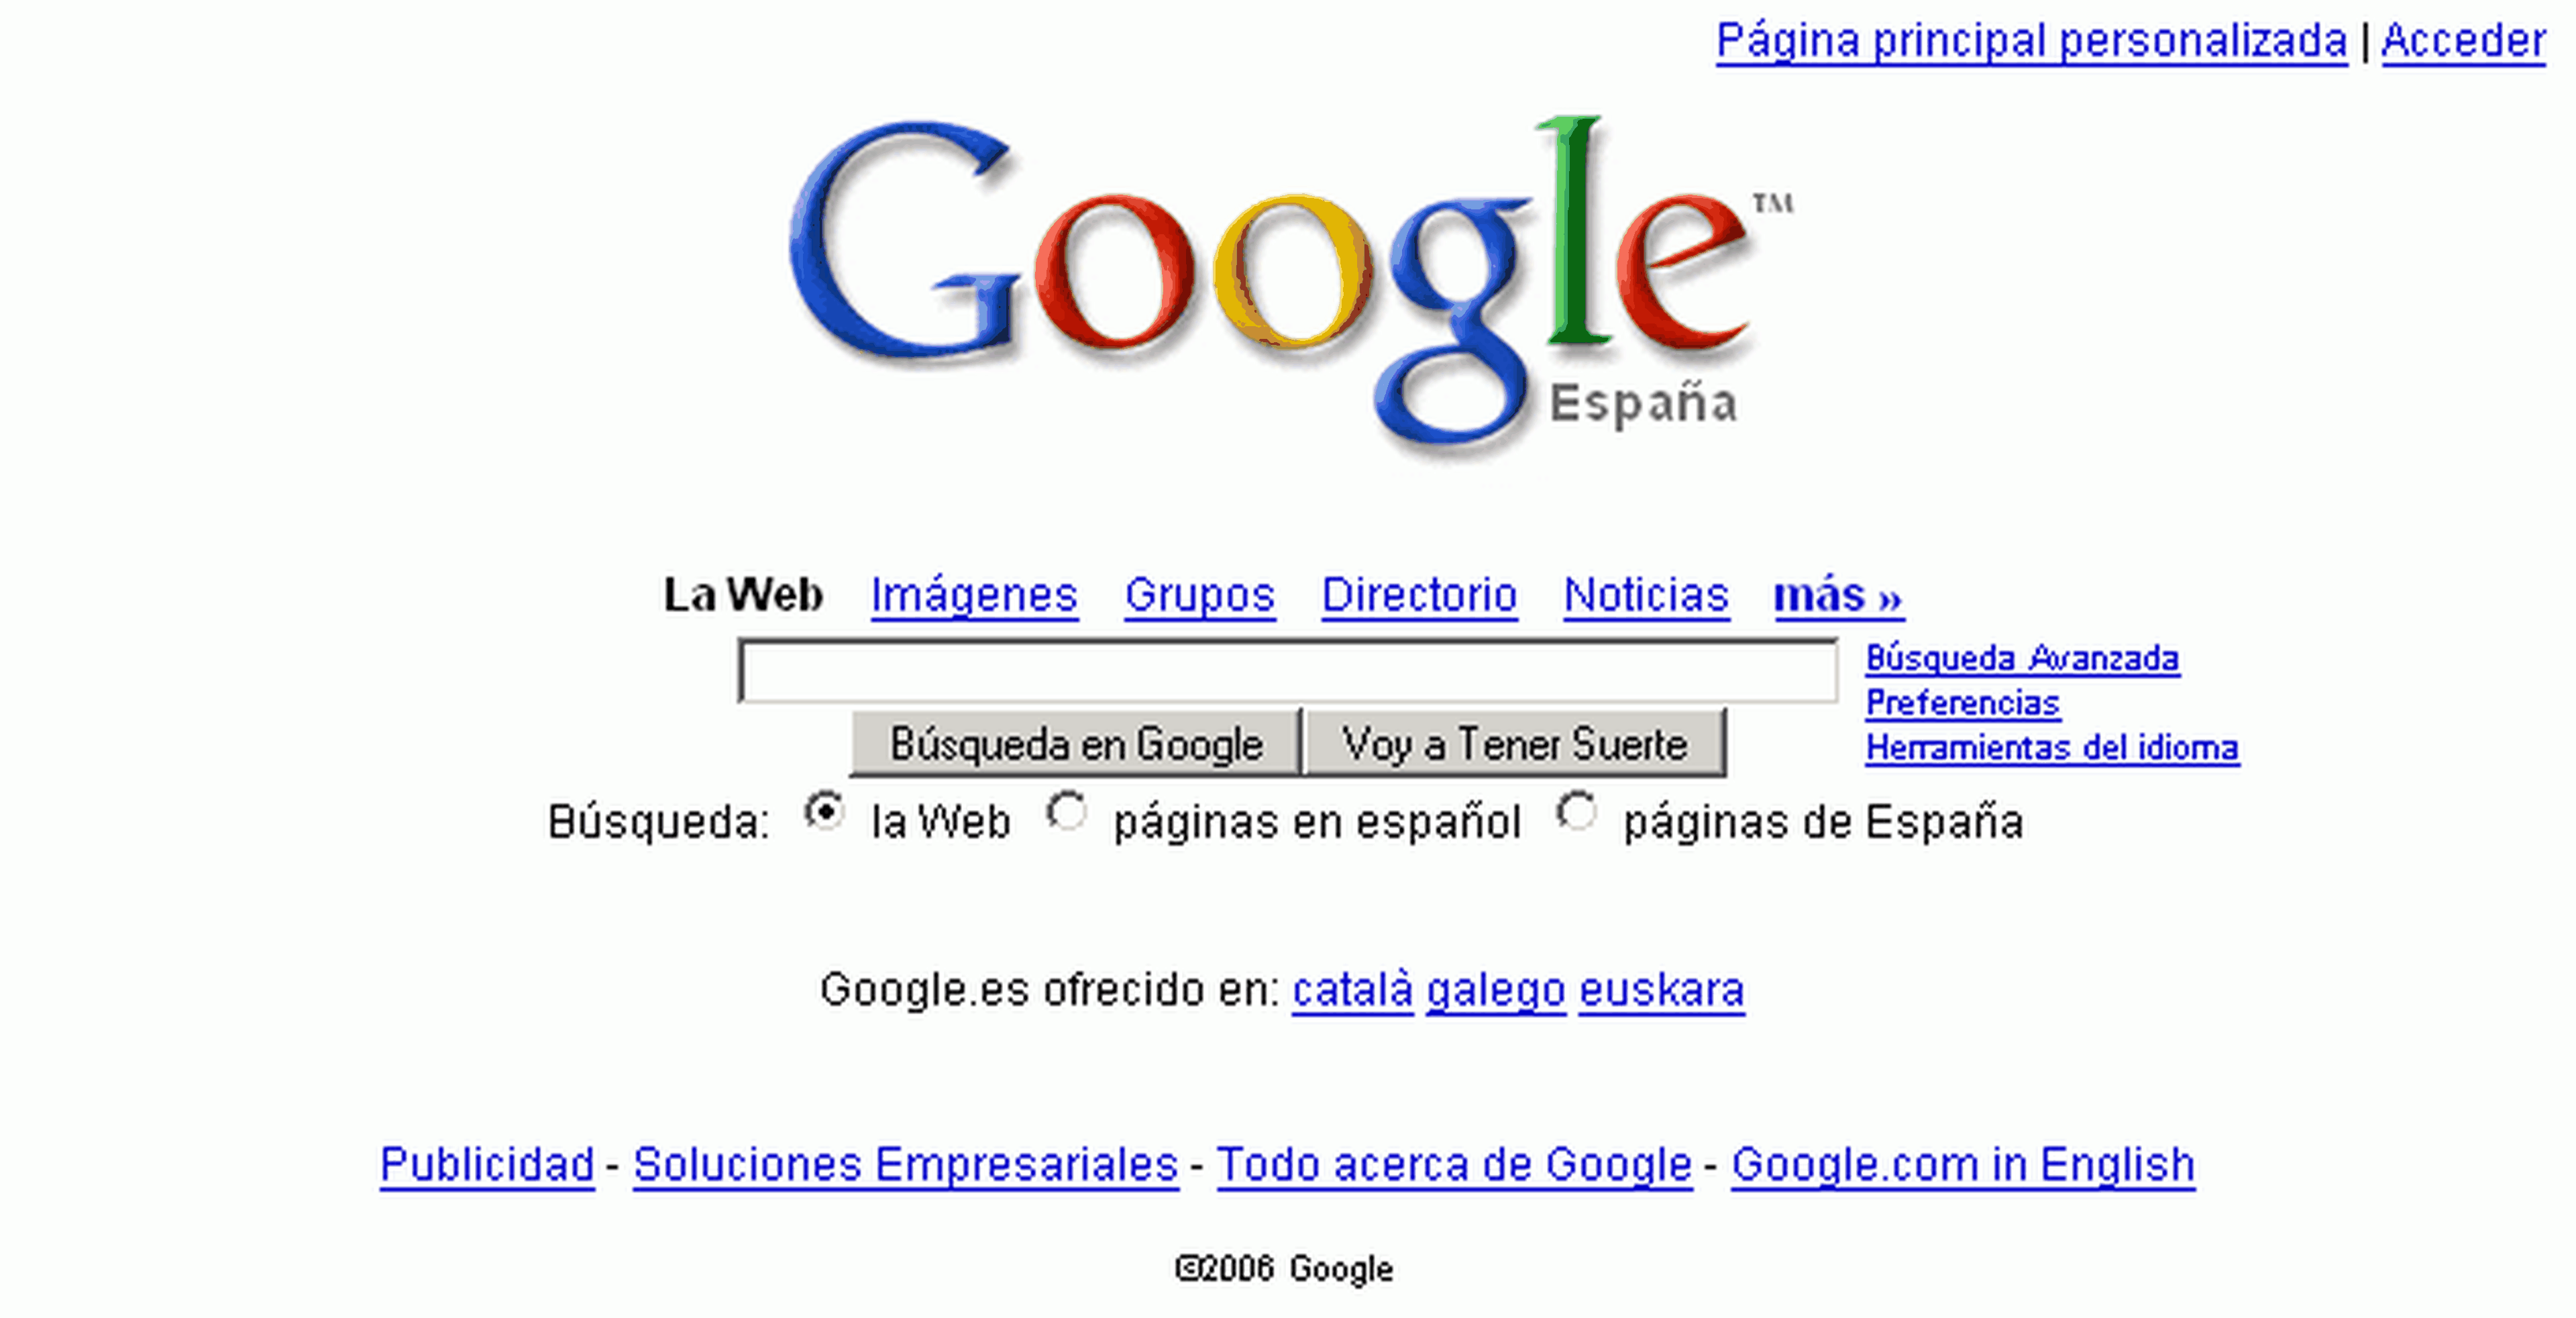 Google España